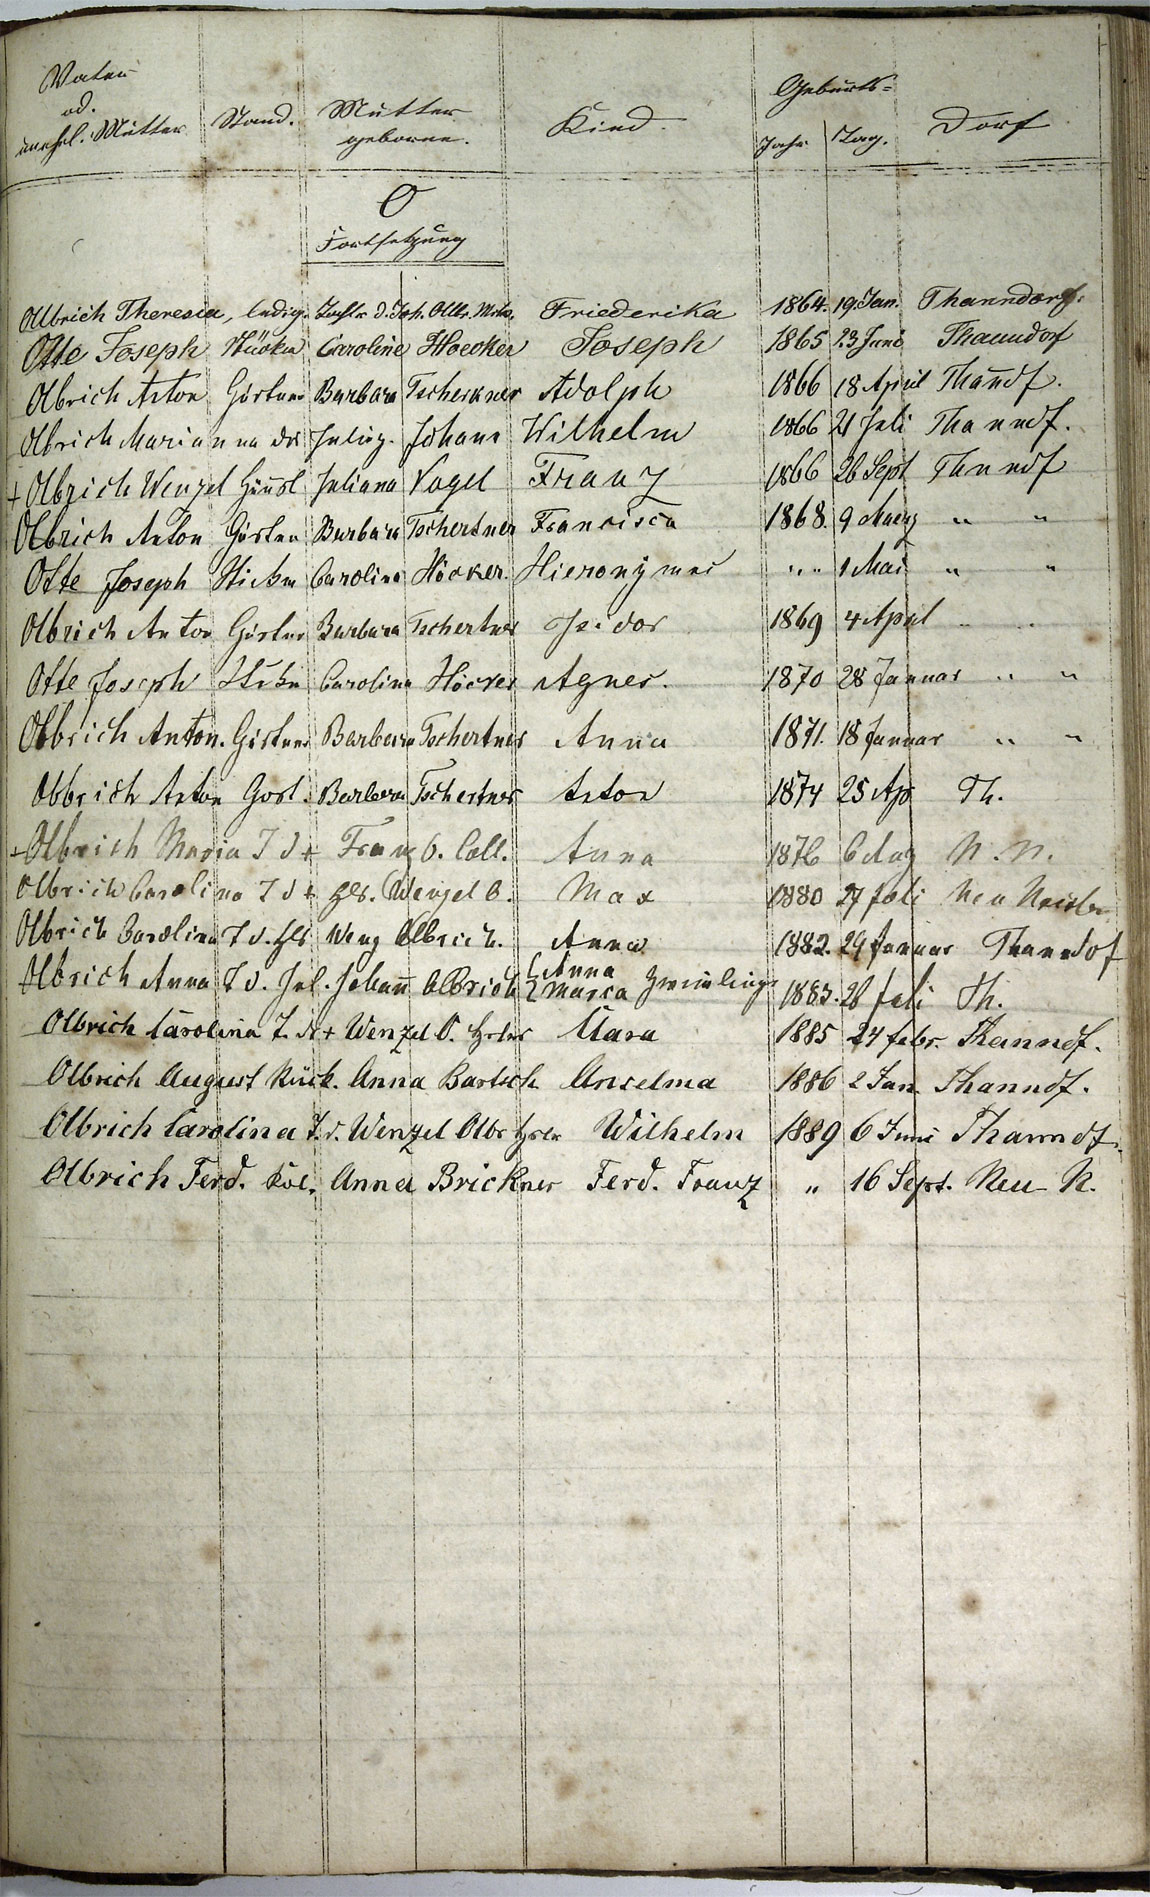 Taufregister 1770 - 1889 Seite 123